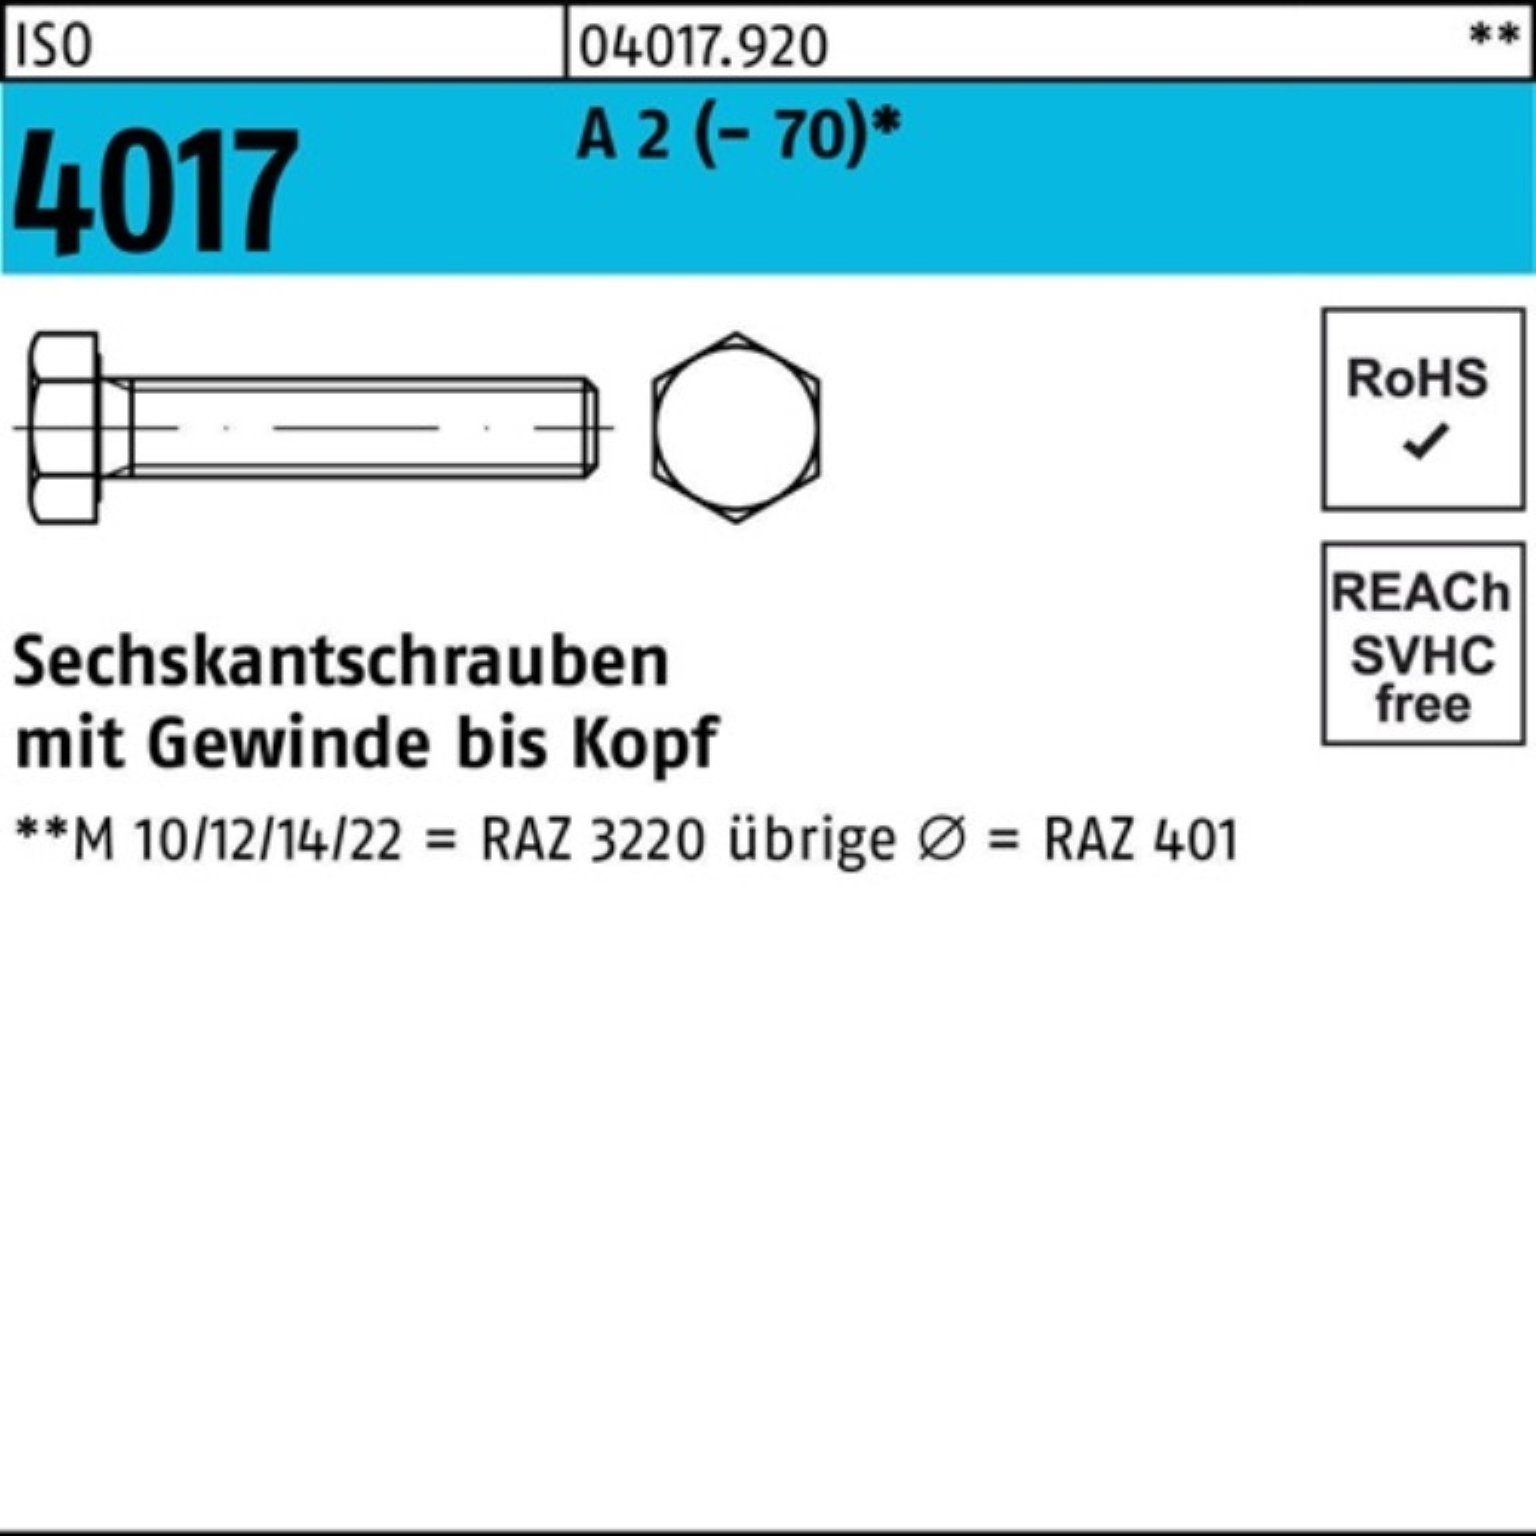 Bufab Sechskantschraube 100er Pack Sechskantschraube ISO 4017 VG M14x 90 A 2 (70) 50 Stück